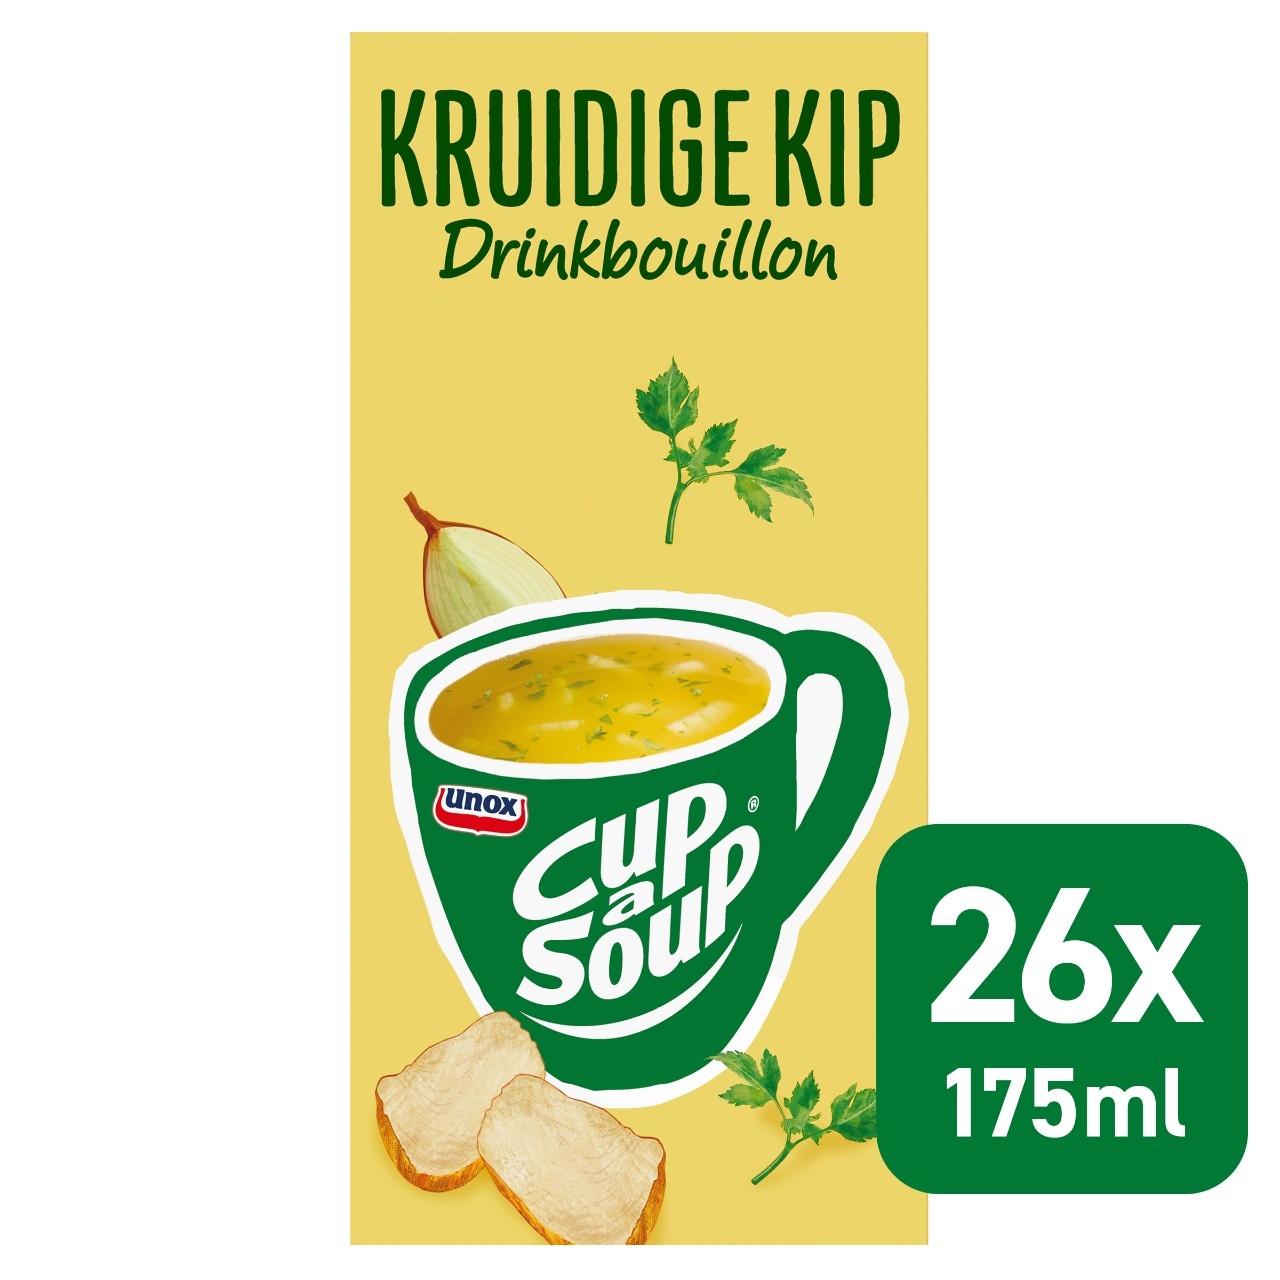 Cup a soup drinkbouillon kruidige kip 26 zakjes